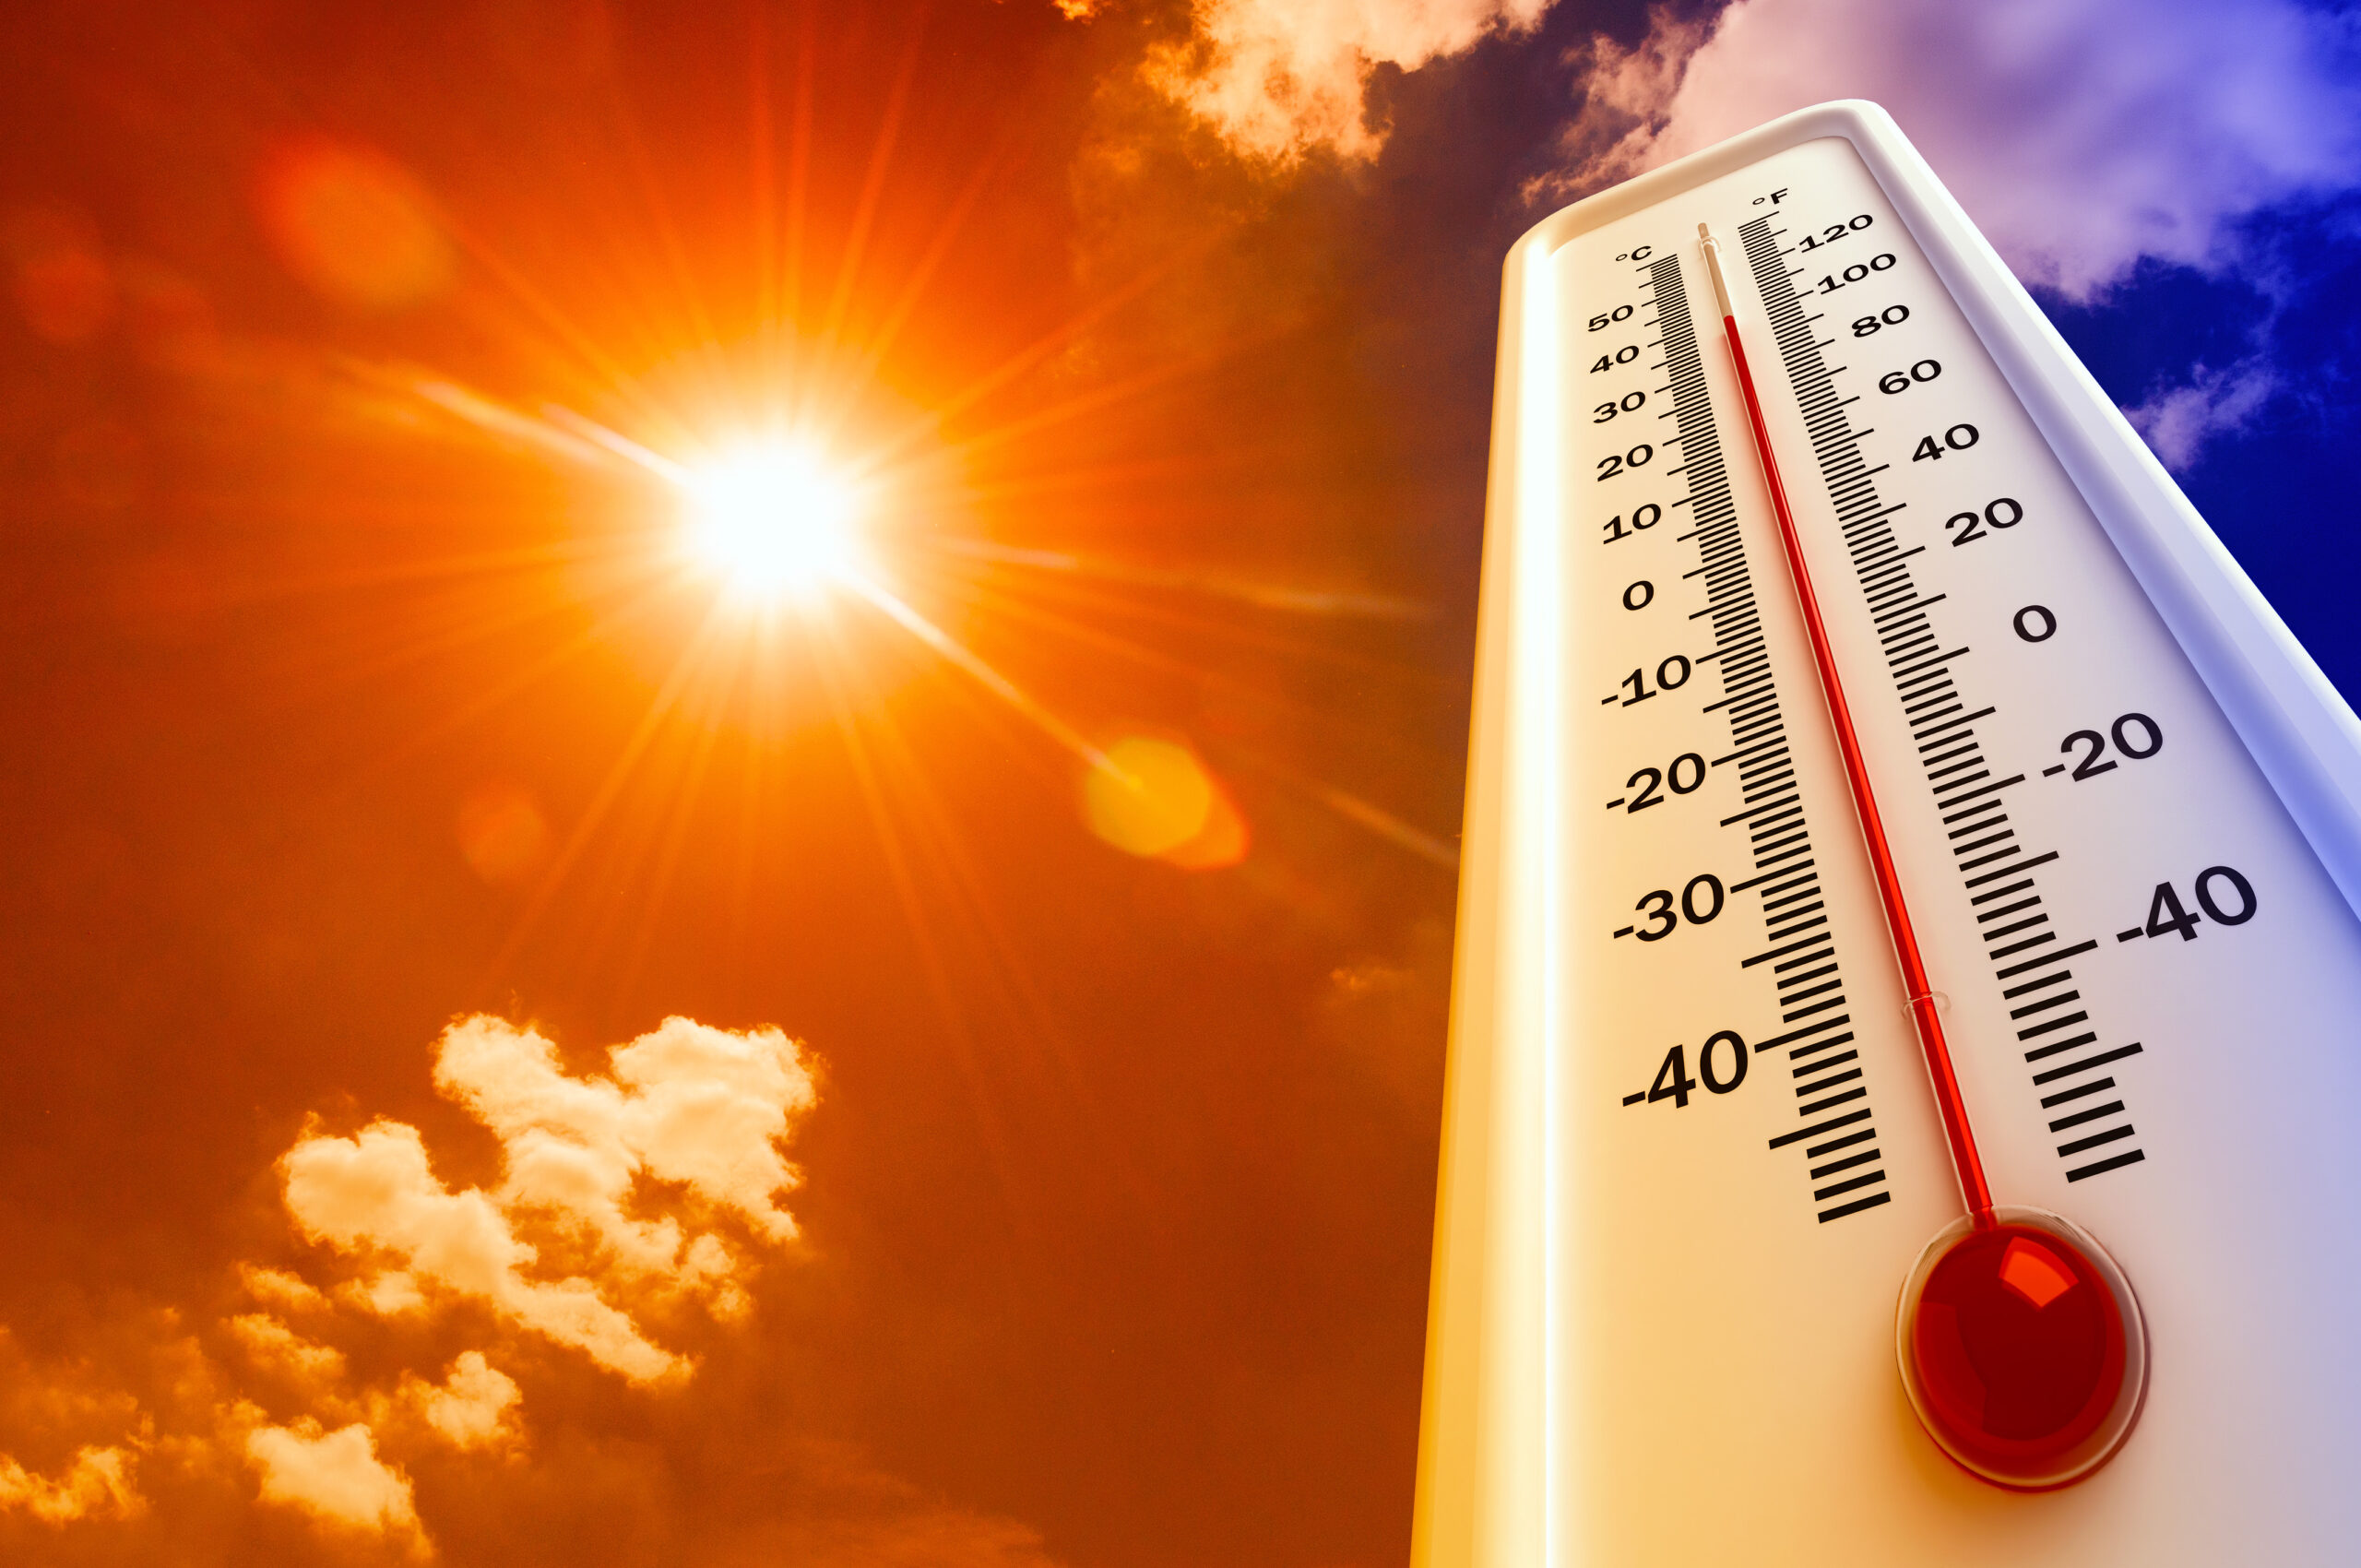 Caribbean heat season warms up, may be hotter than usual